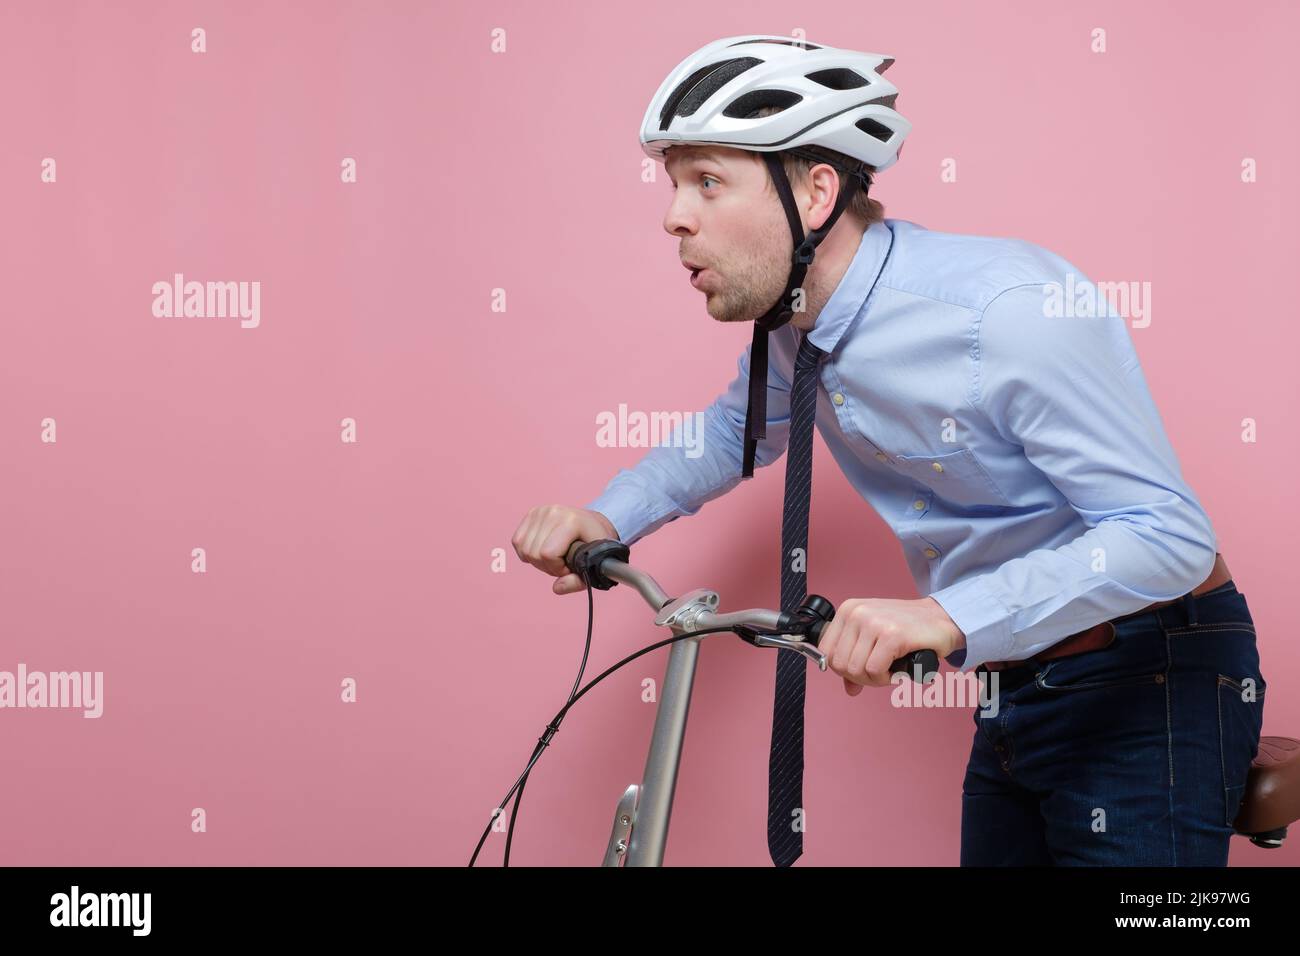 Hombre caucásico sorprendido con casco en bicicleta sobre fondo rosa Foto de stock